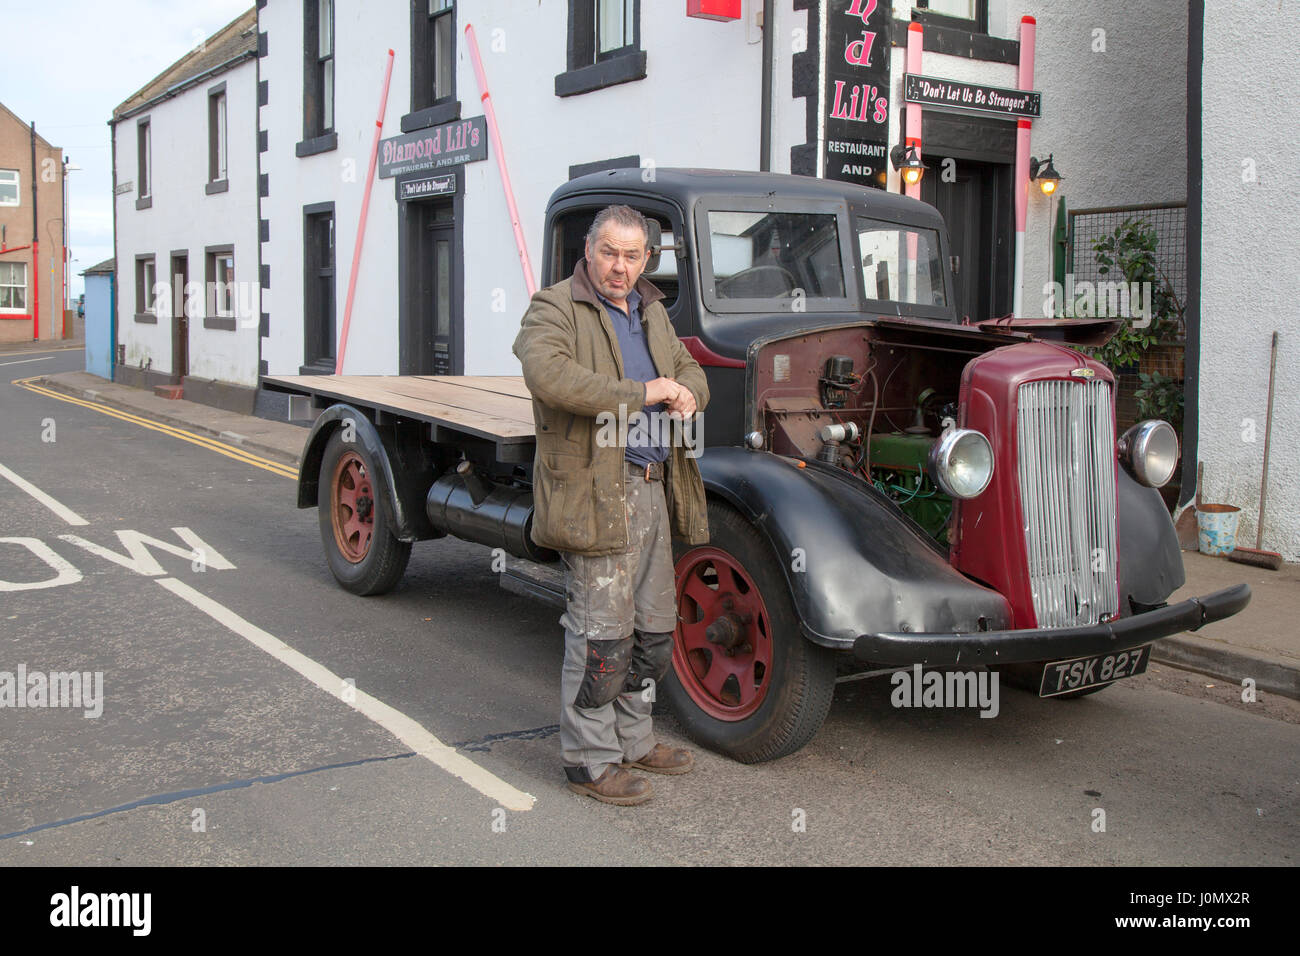 1923 20 anni prima della guerra Morris Commercial Van è frequentato dal proprietario Jim McCallum, che è coinvolto nel suo restauro. Montrose, Scozia, Regno Unito Foto Stock